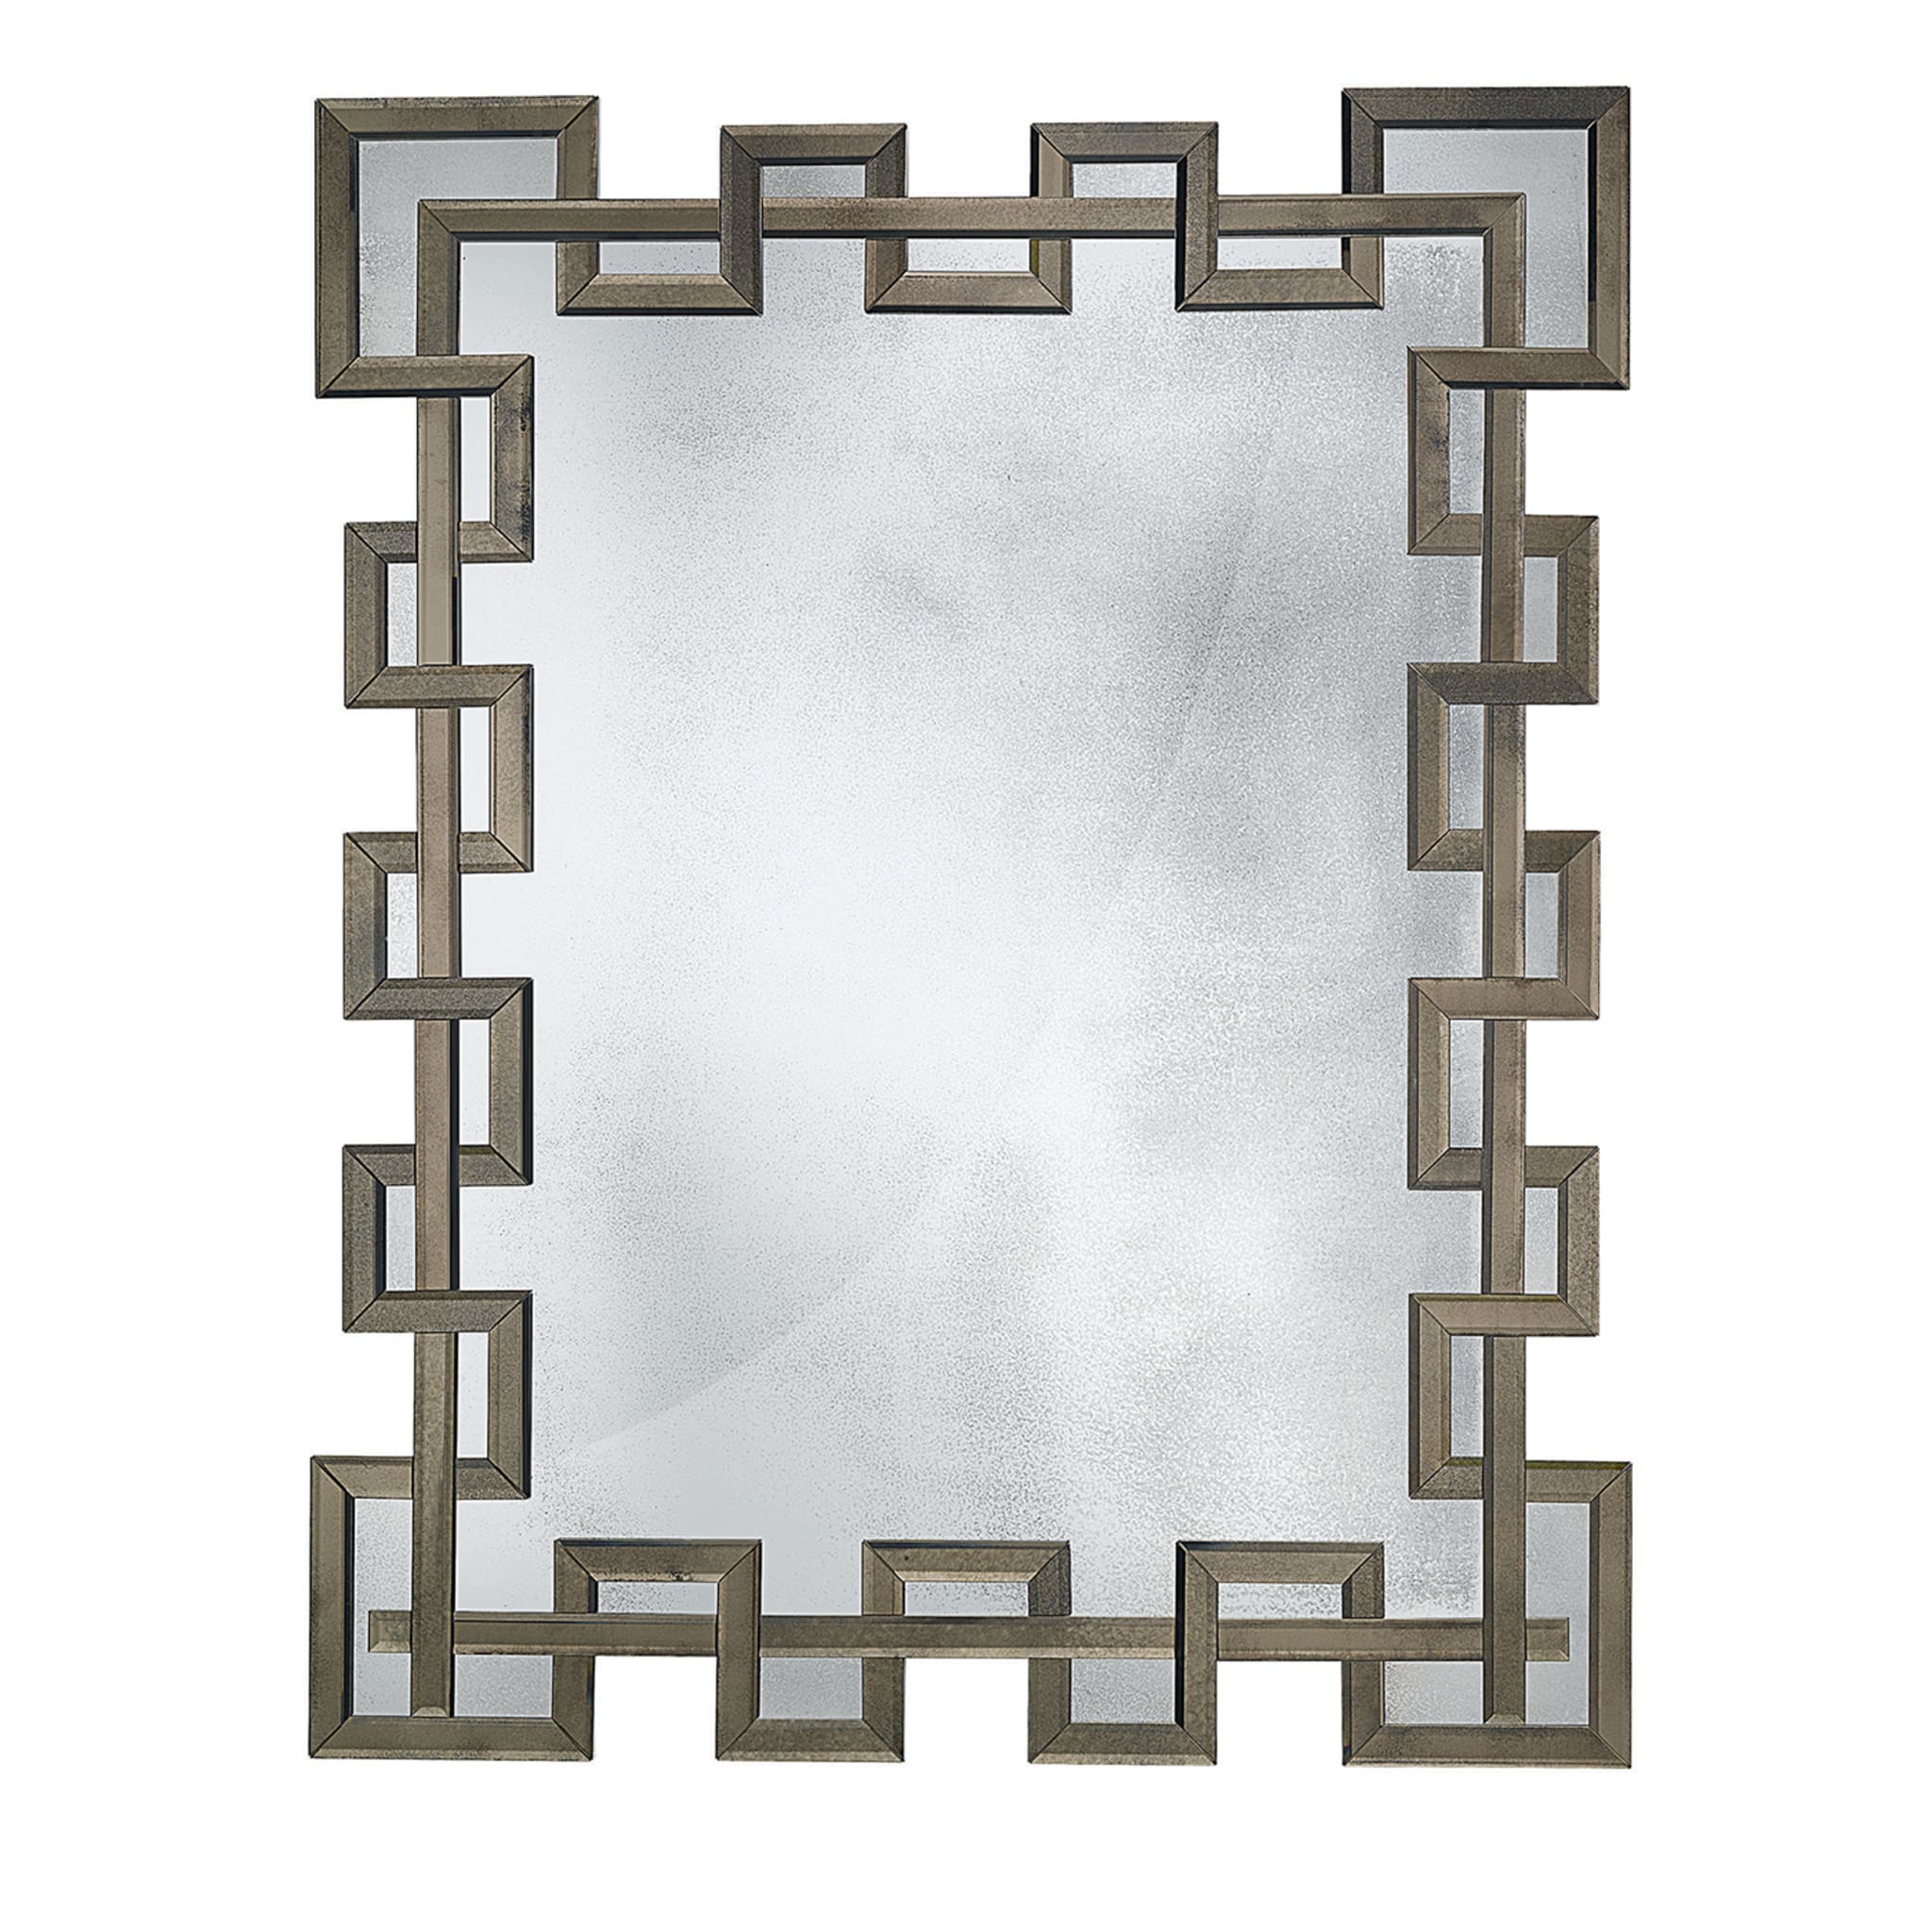 Greca Mirror - Vista principale